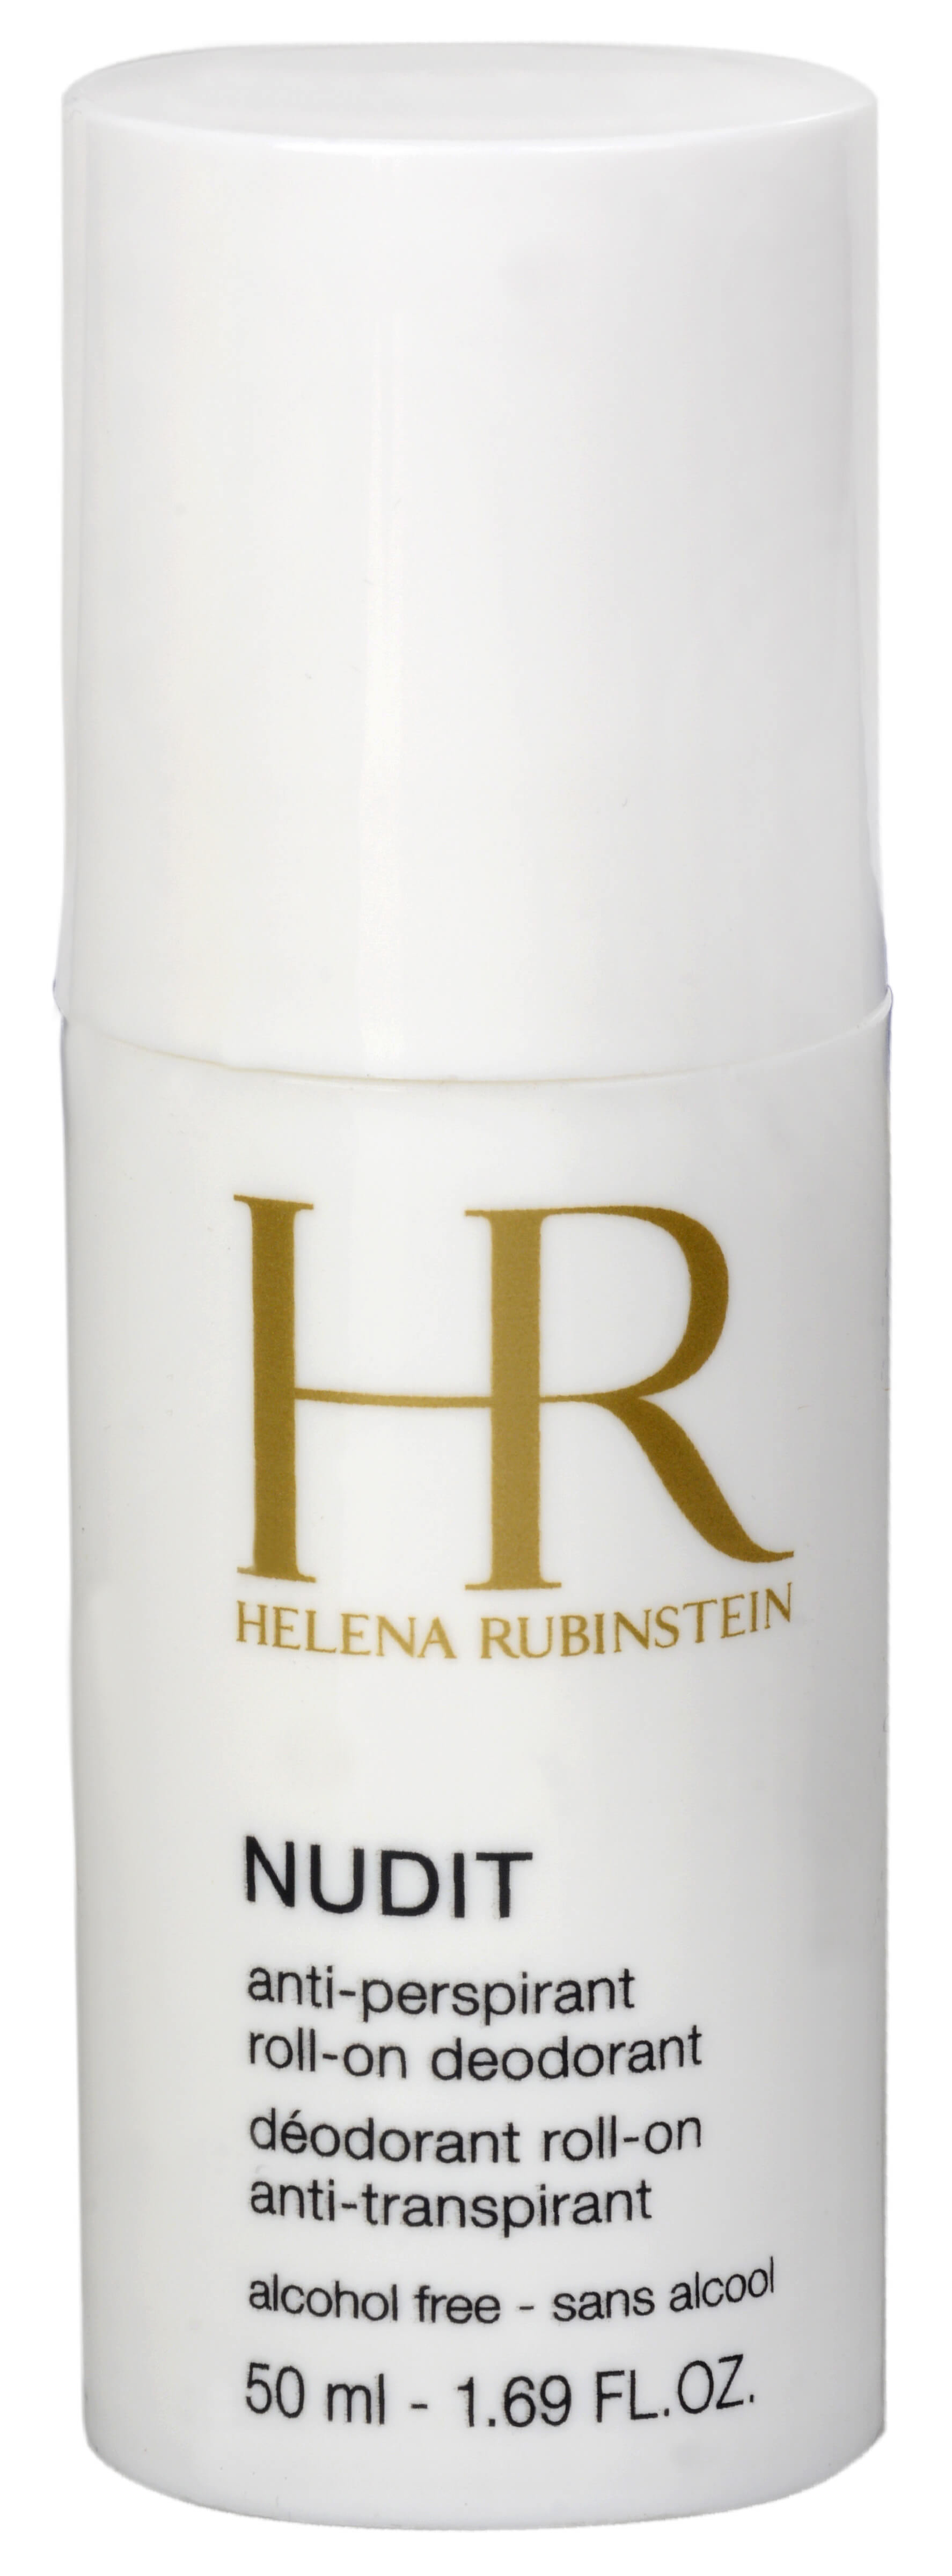 Helena Rubinstein Extrémně silný osvěžující deodorant roll-on pro citlivou pokožku (Nudit Deodorant Anti-perspirant) 50 ml